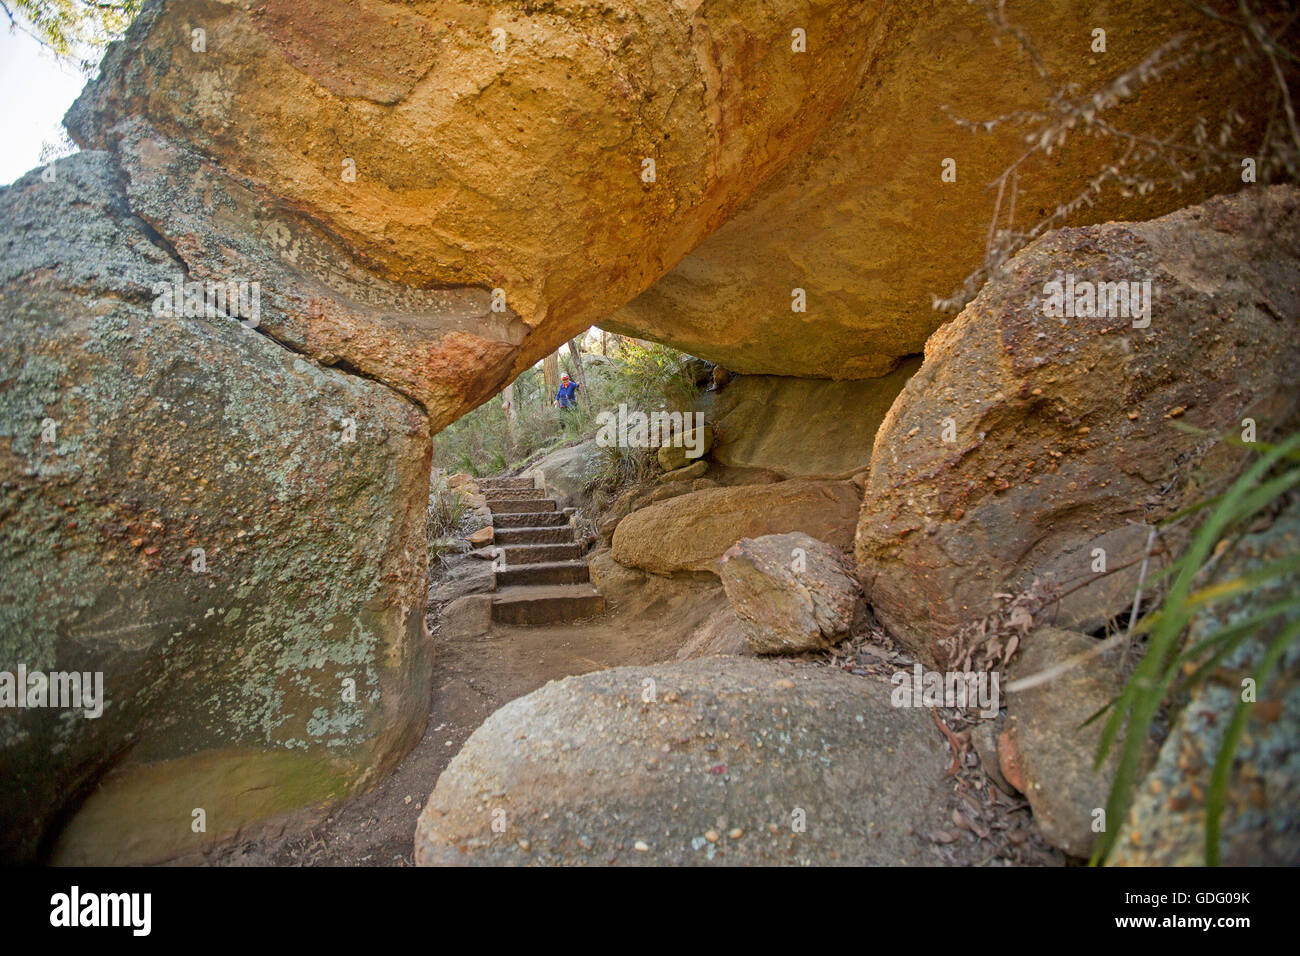 Par le biais de marches en pierre naturelle spectaculaire rock arch sur une piste de marche à travers la forêt dans la région de Goulburn River National Park, NSW Australie Banque D'Images